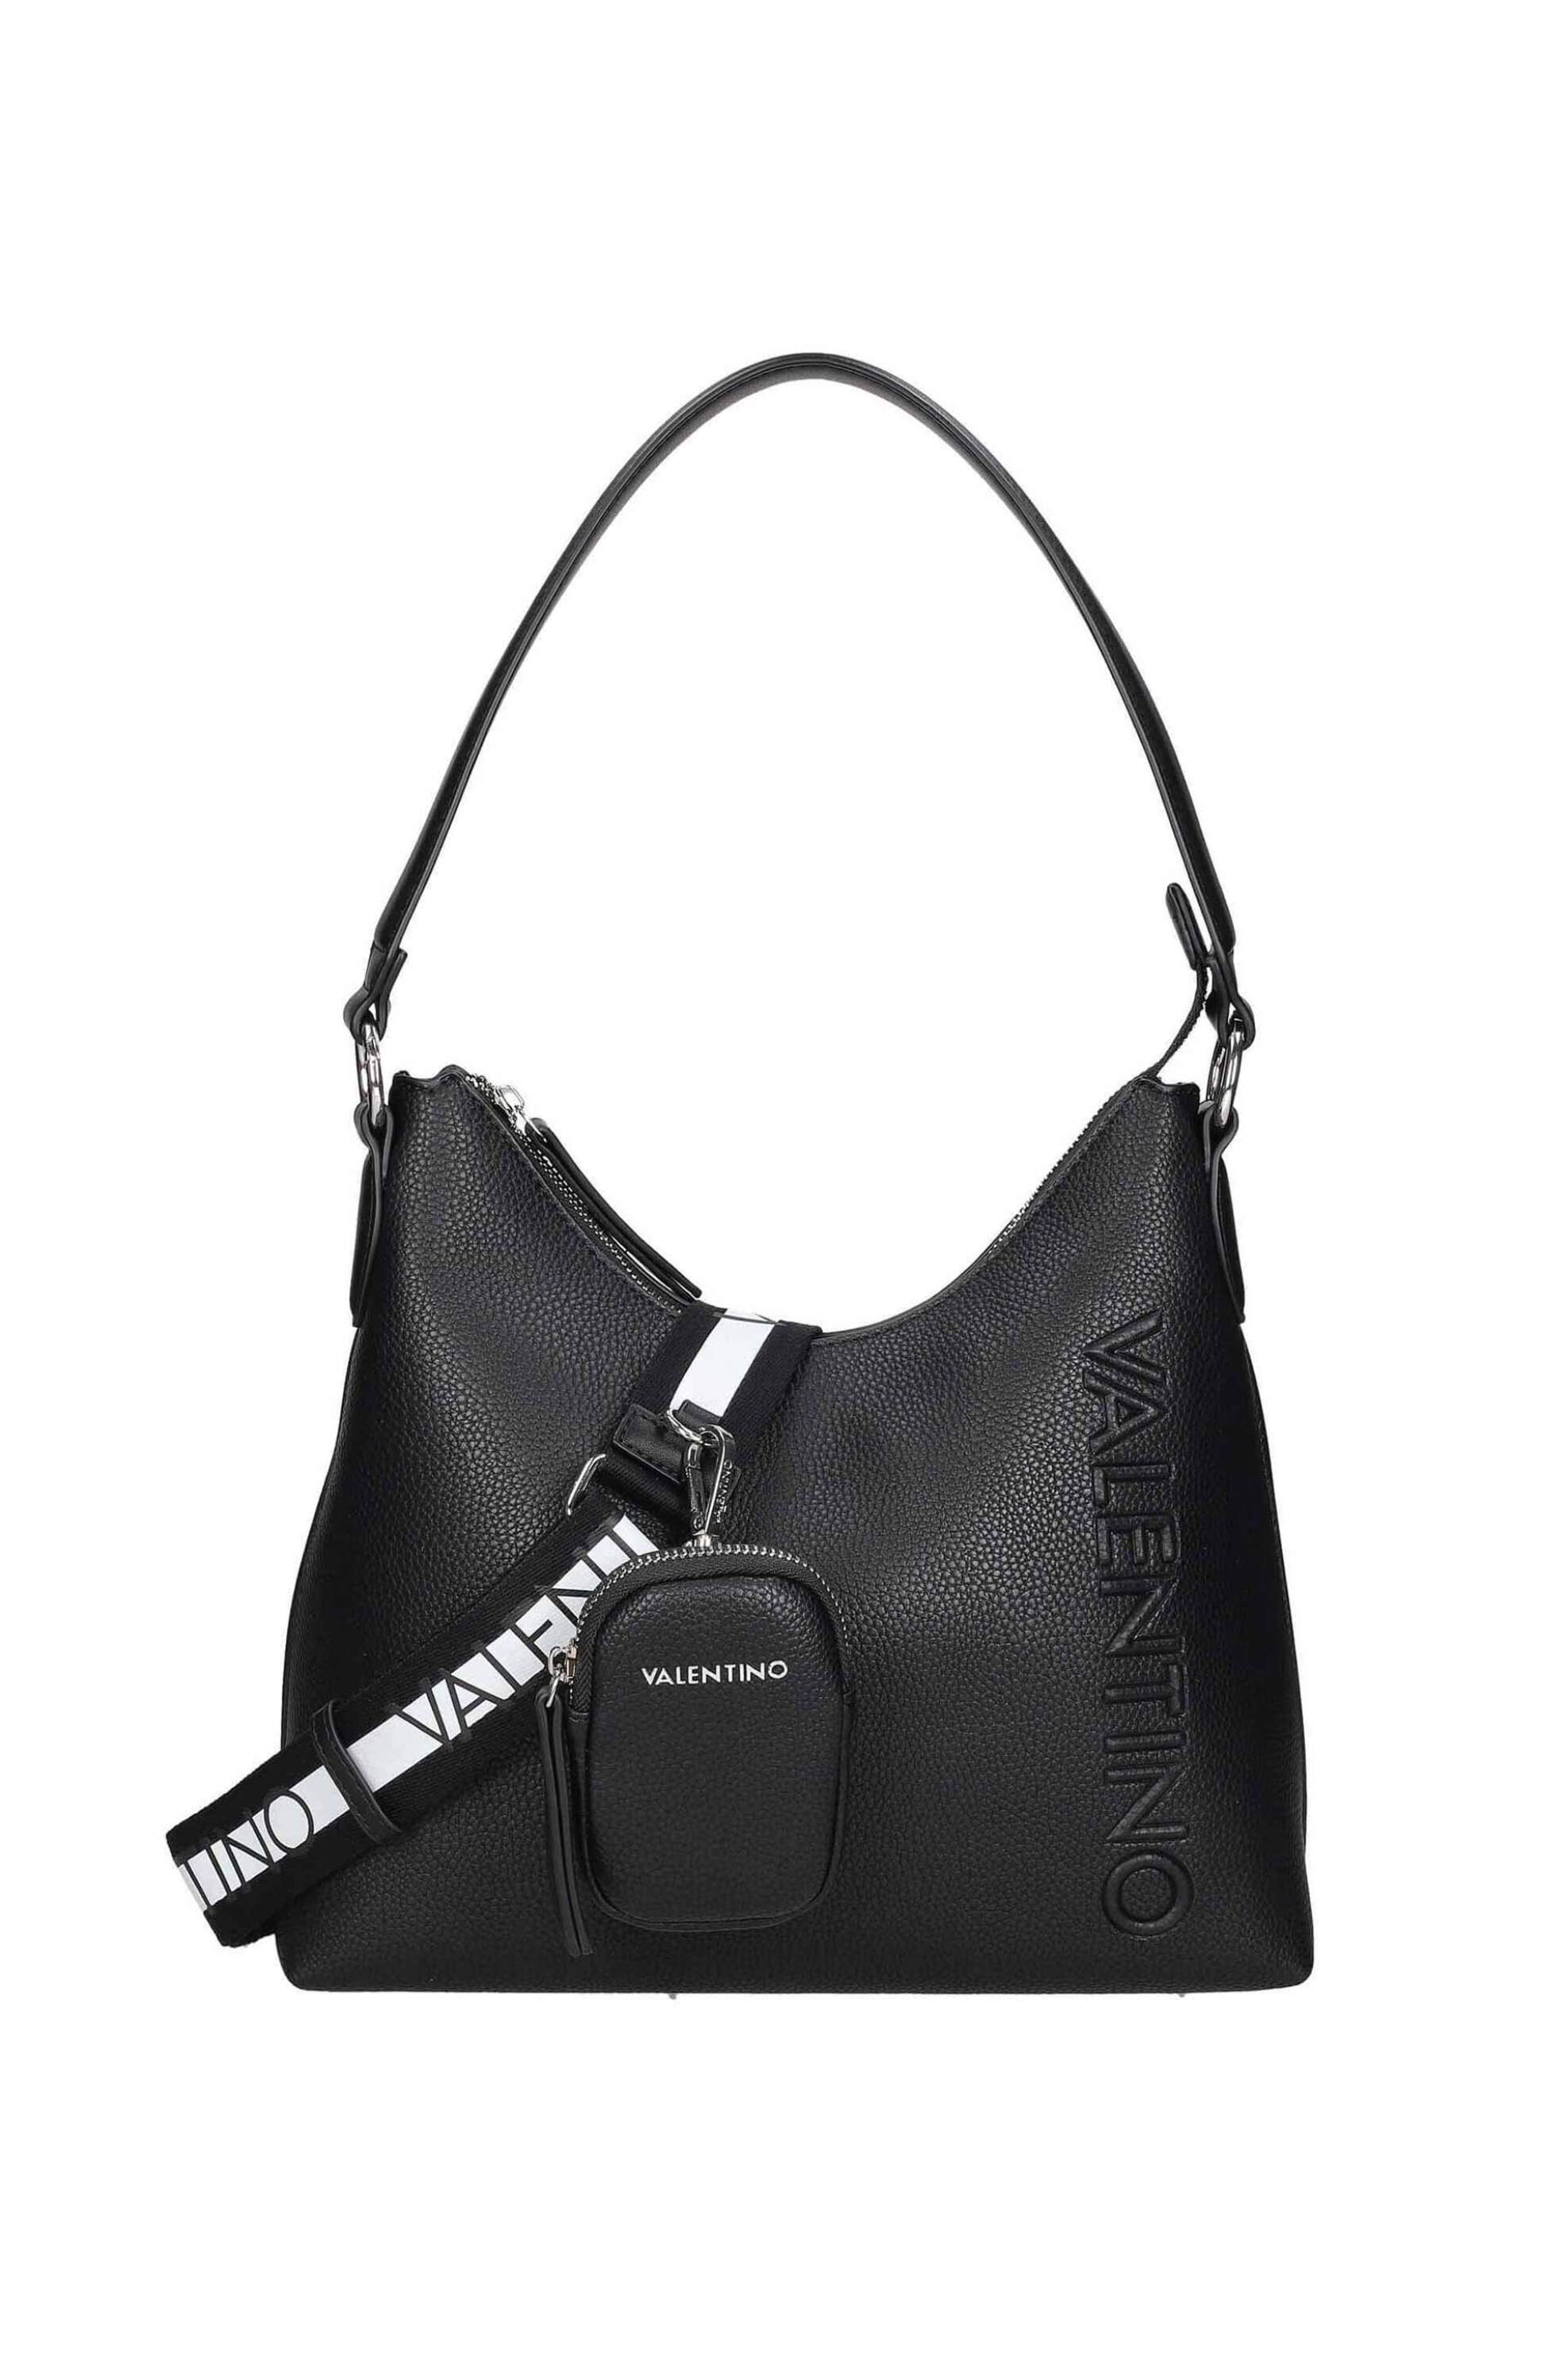 Γυναίκα > ΤΣΑΝΤΕΣ > Τσάντες Ώμου & Shopper Bags Valentino γυναικεία τσάντα ώμου μονόχρωμη με ανάγλυφο logo "Soho" - 55KVBS7LV01/SOH Μαύρο